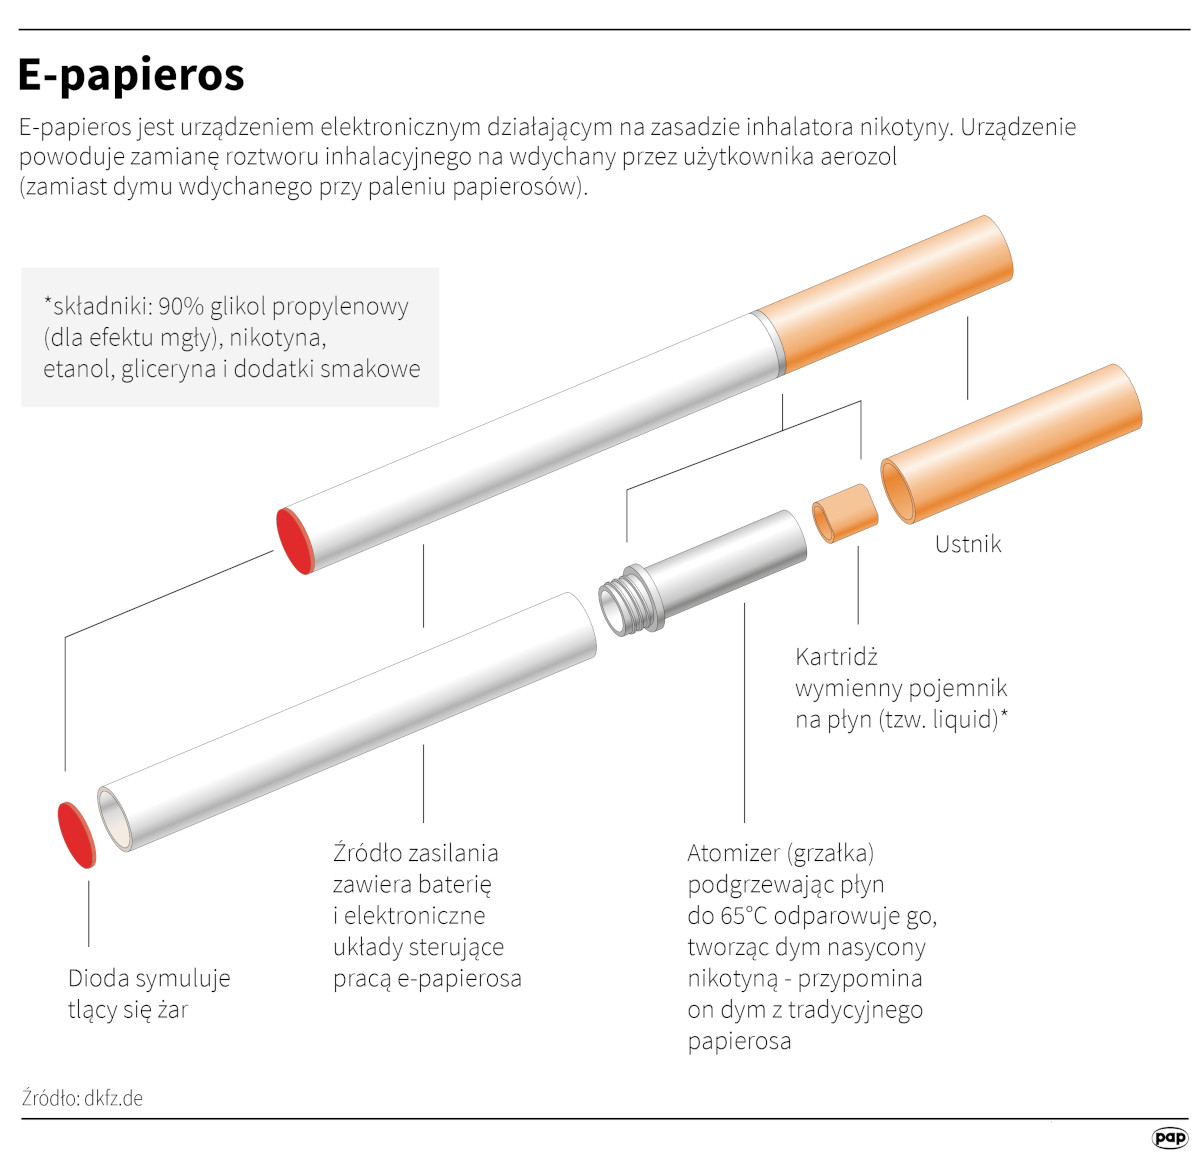 E-papieros jest urządzeniem elektronicznym działającym na zasadzie inhalatora nikotyny. PAP/Adam Ziemienowicz